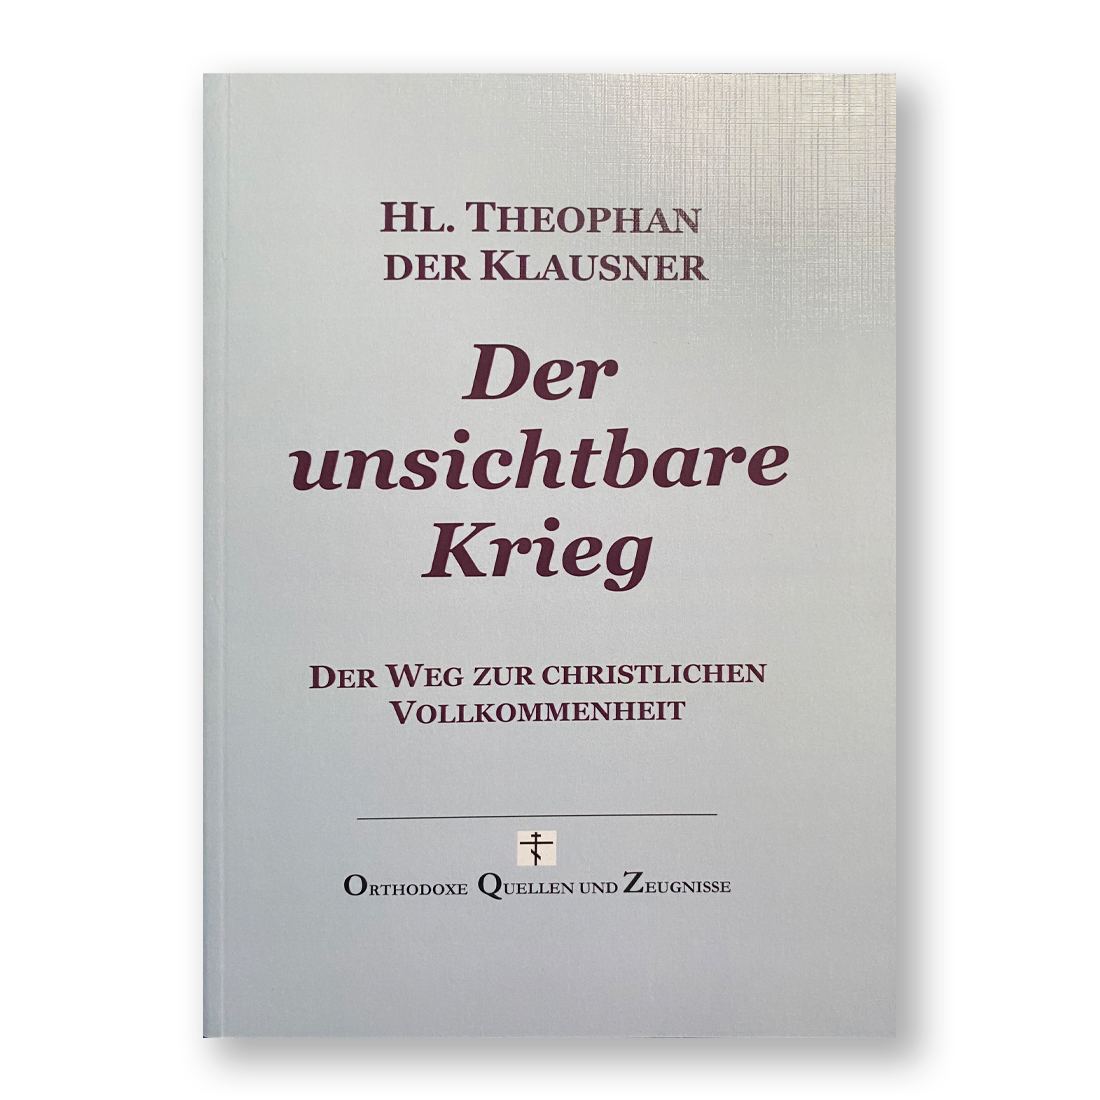 Neuerscheinung!

Heiliger Theophan der Klausner: 
DER UNSICHTBARE KRIEG

Der Weg zur geistlichen Vollkommenheit.